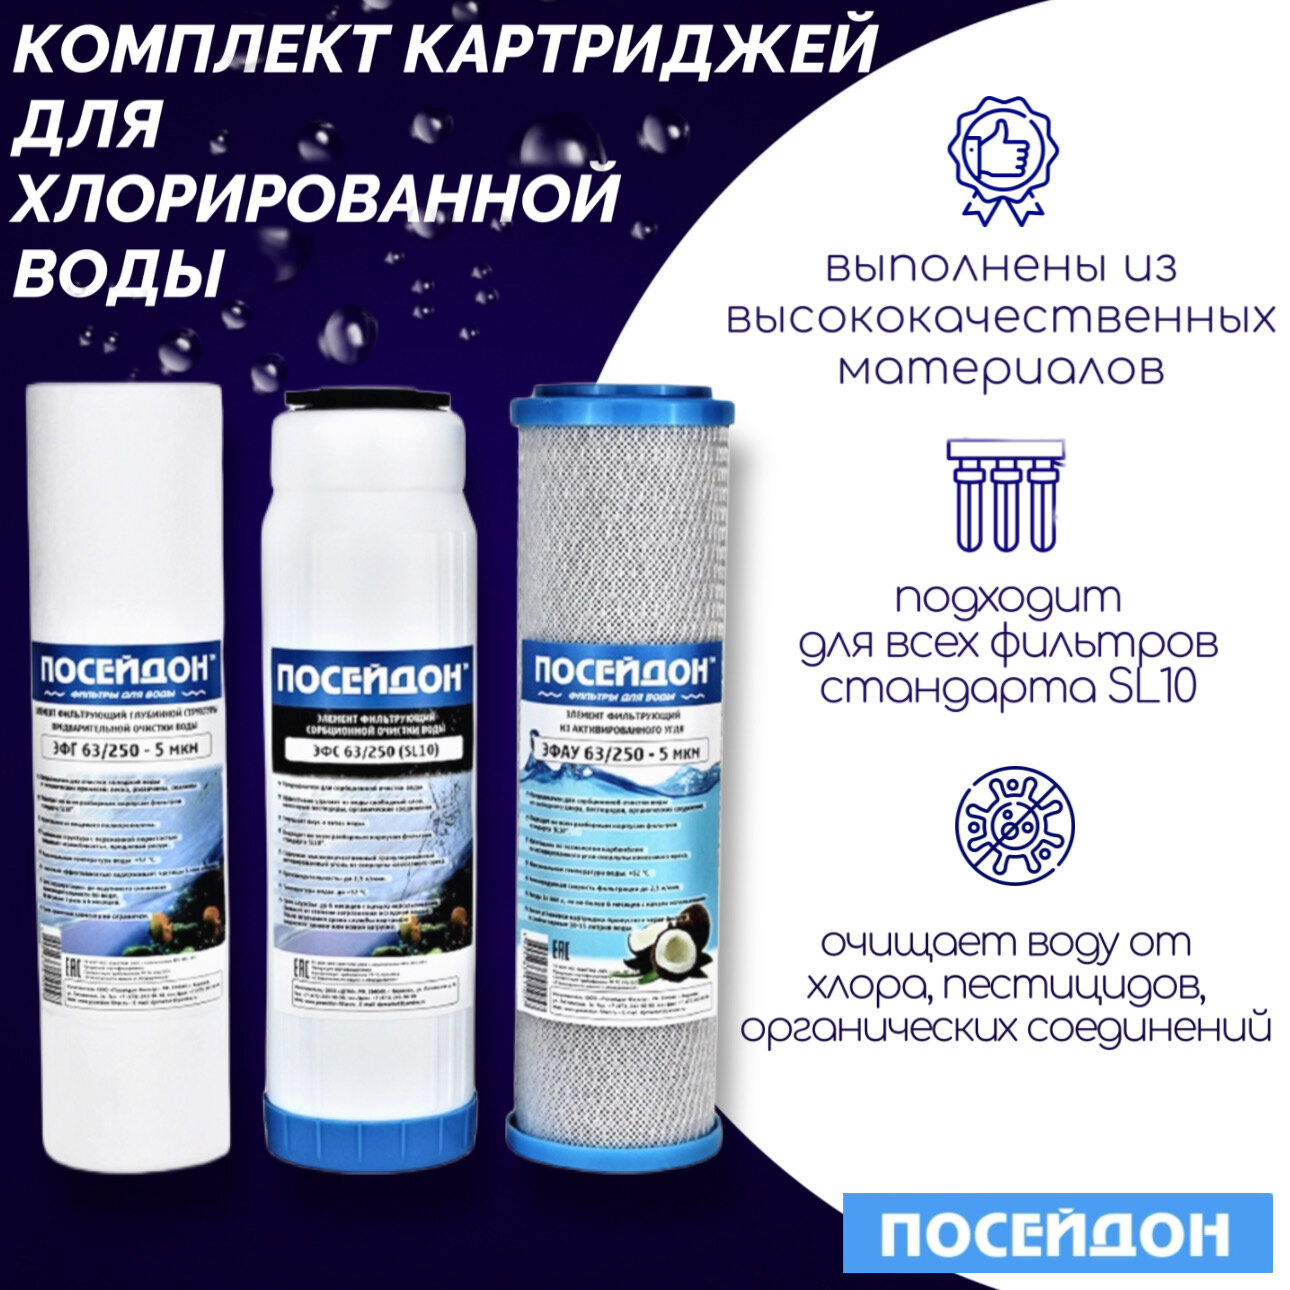 Комплект картриджей для хлорированной воды "ПОСЕЙДОН-3" стандарта SL10 для любых трёхступенчатых систем очистки